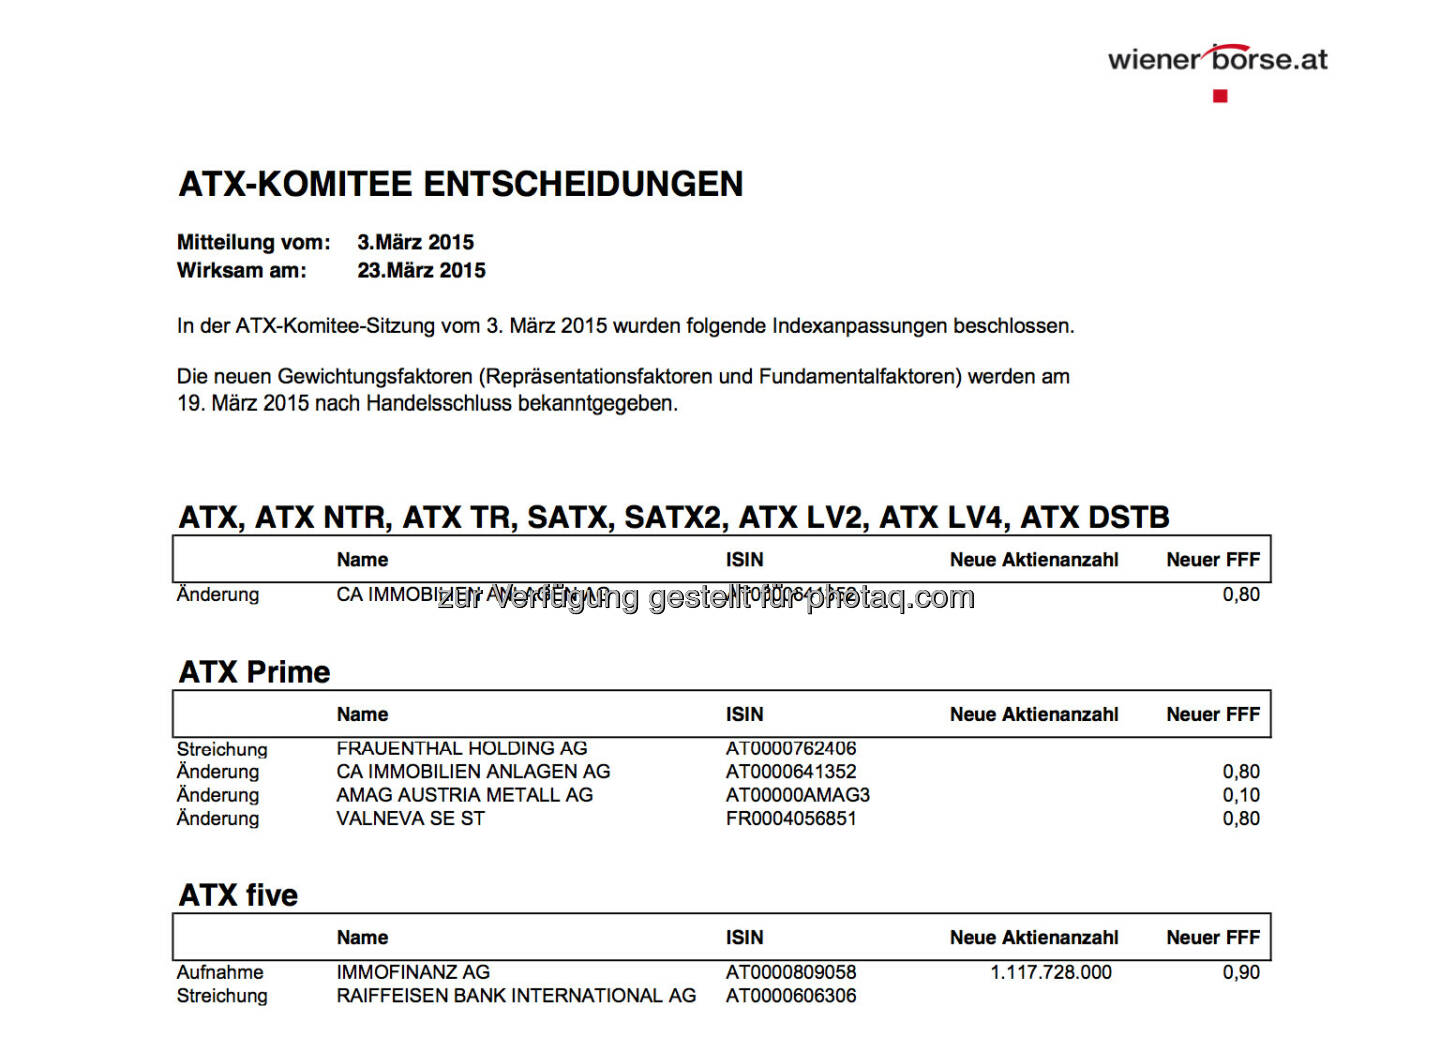 ATX-Komitee Entscheidungen 3. März (Auszug): Immofinanz statt RBI im ATX-Five © Wiener Börse